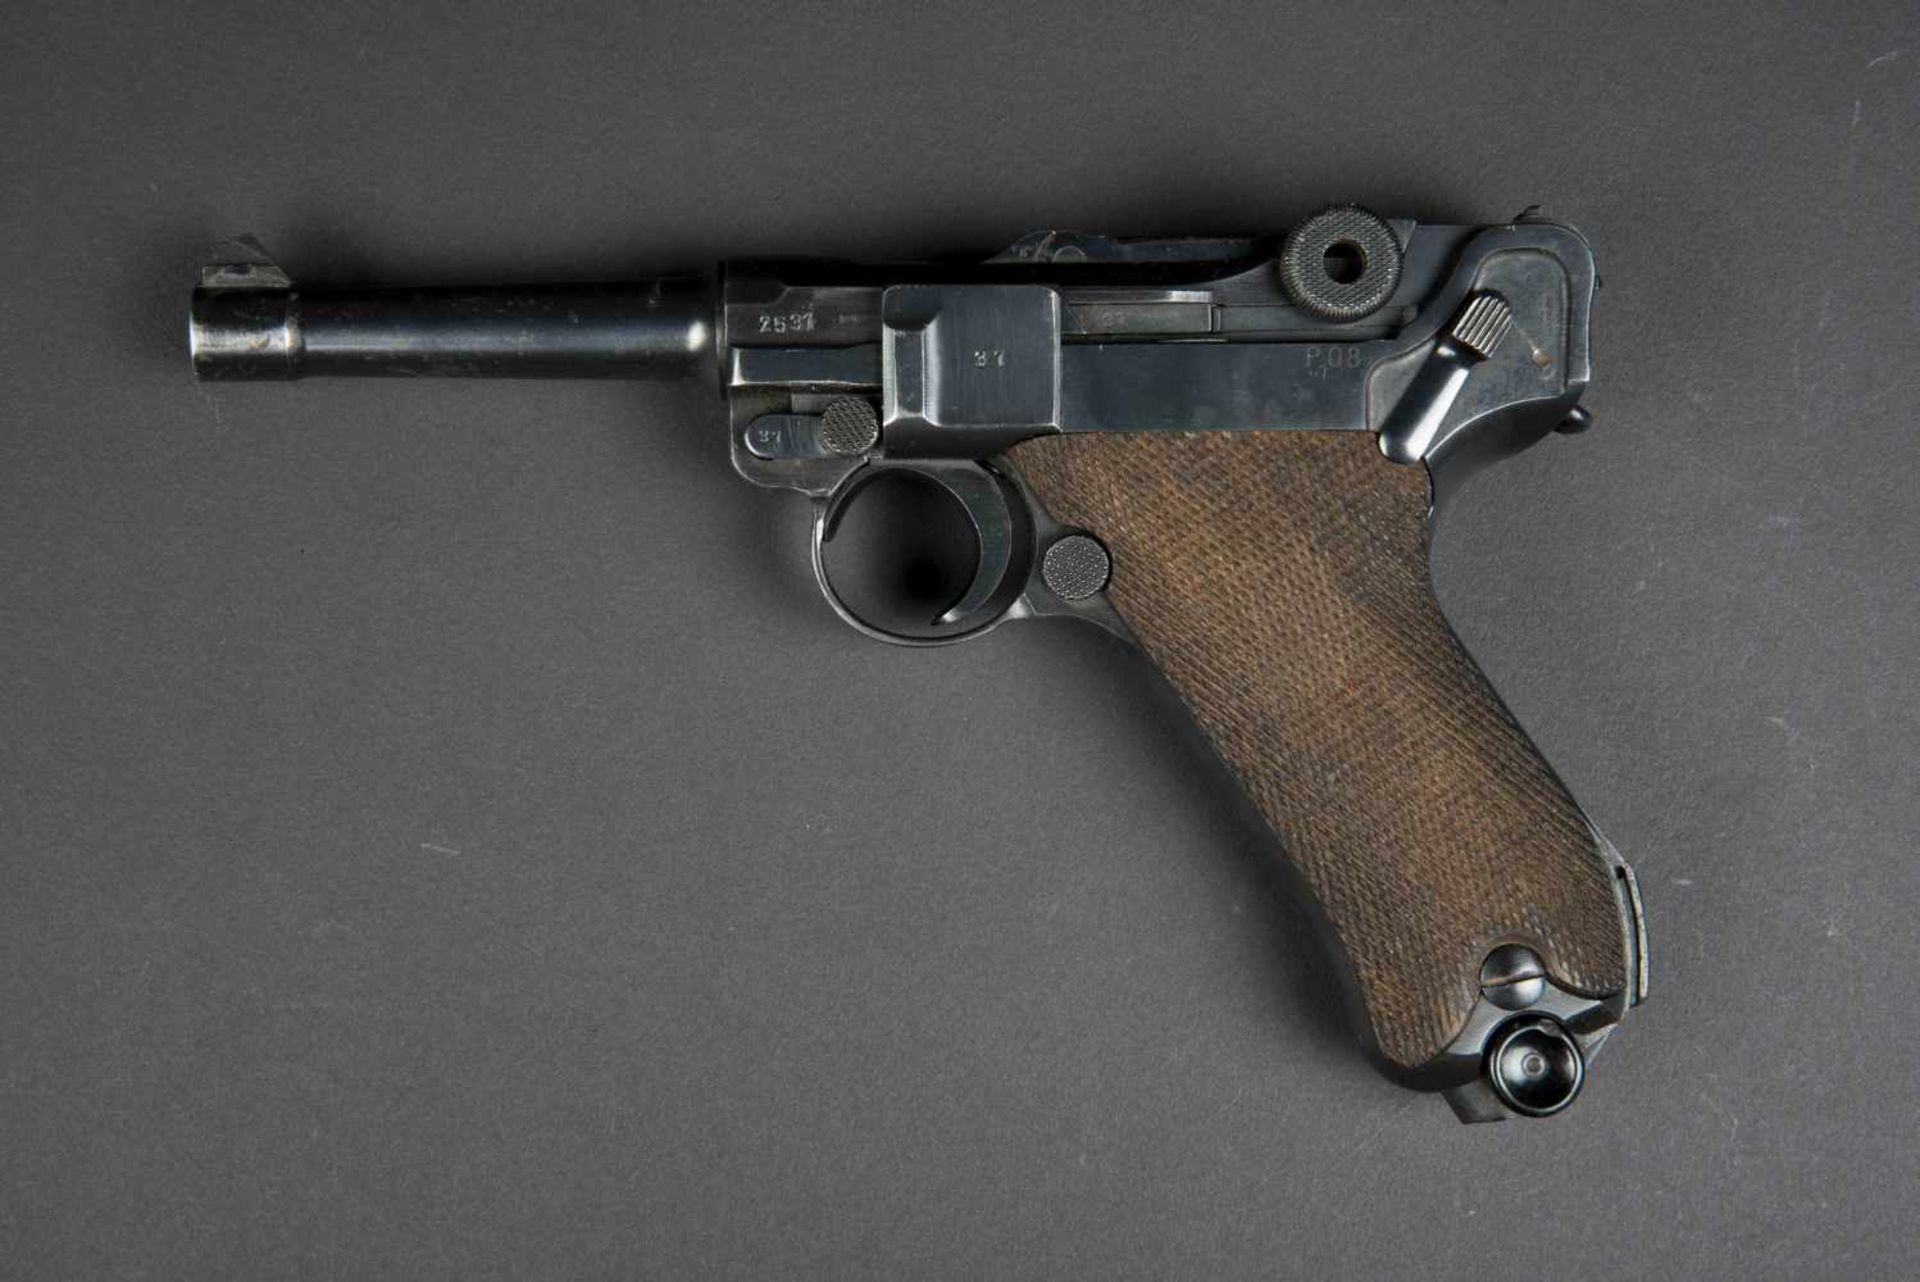 Pistolet P08 et son holster, catégorie B. Fabrication BYF41, numéro 2531, arme visiblement au